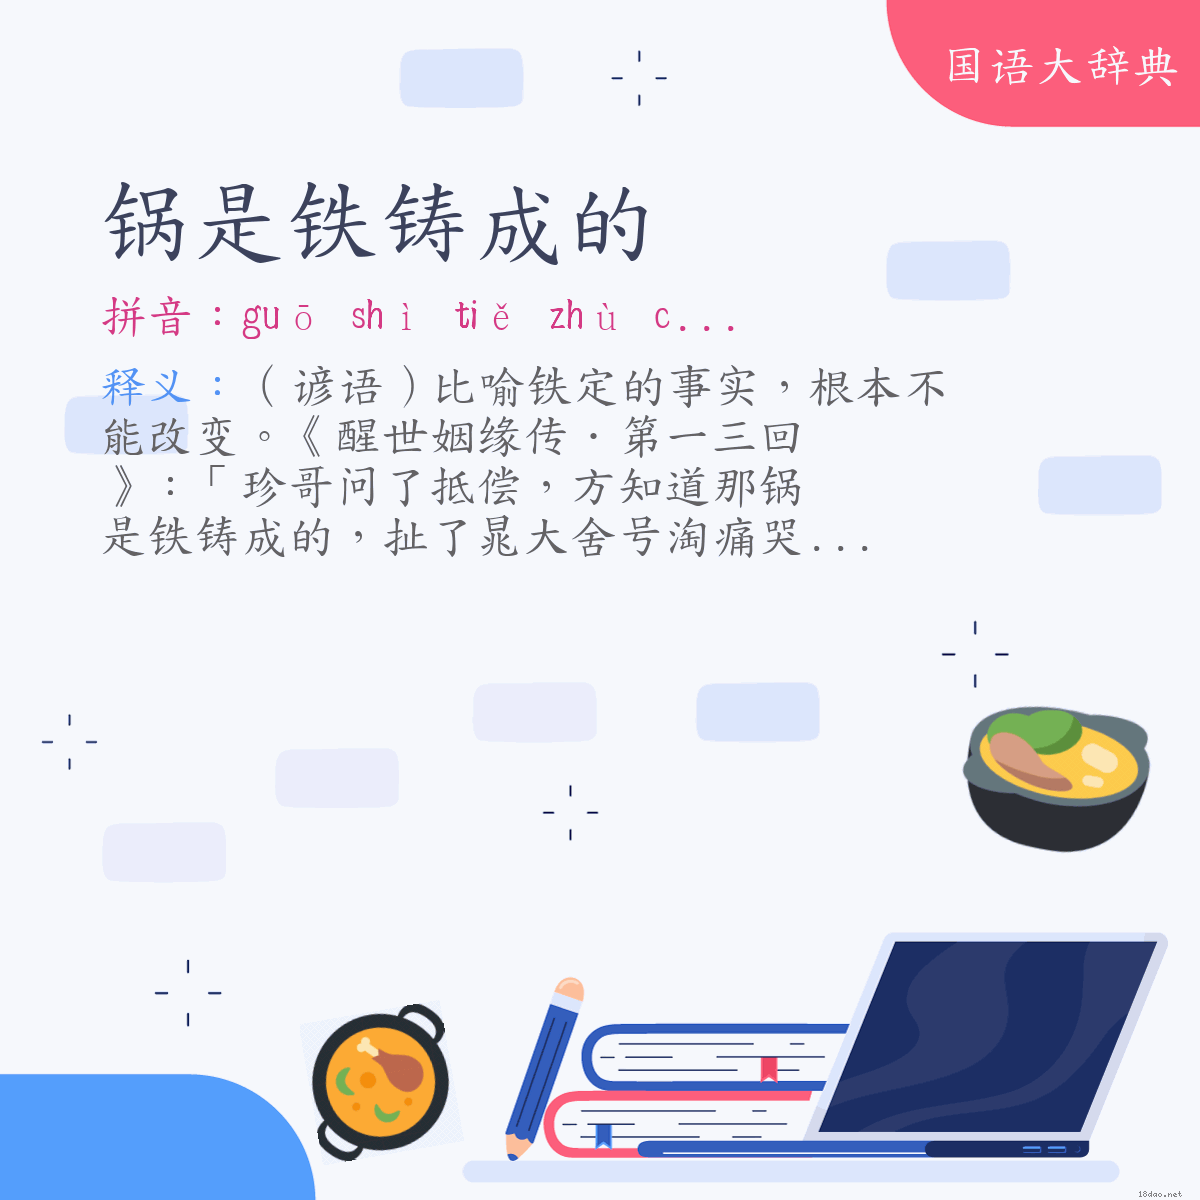 词语:锅是铁铸成的 (注音:ㄍㄨㄛ　ㄕˋ　ㄊㄧㄝˇ　ㄓㄨˋ　ㄔㄥˊ　˙ㄉㄜ)